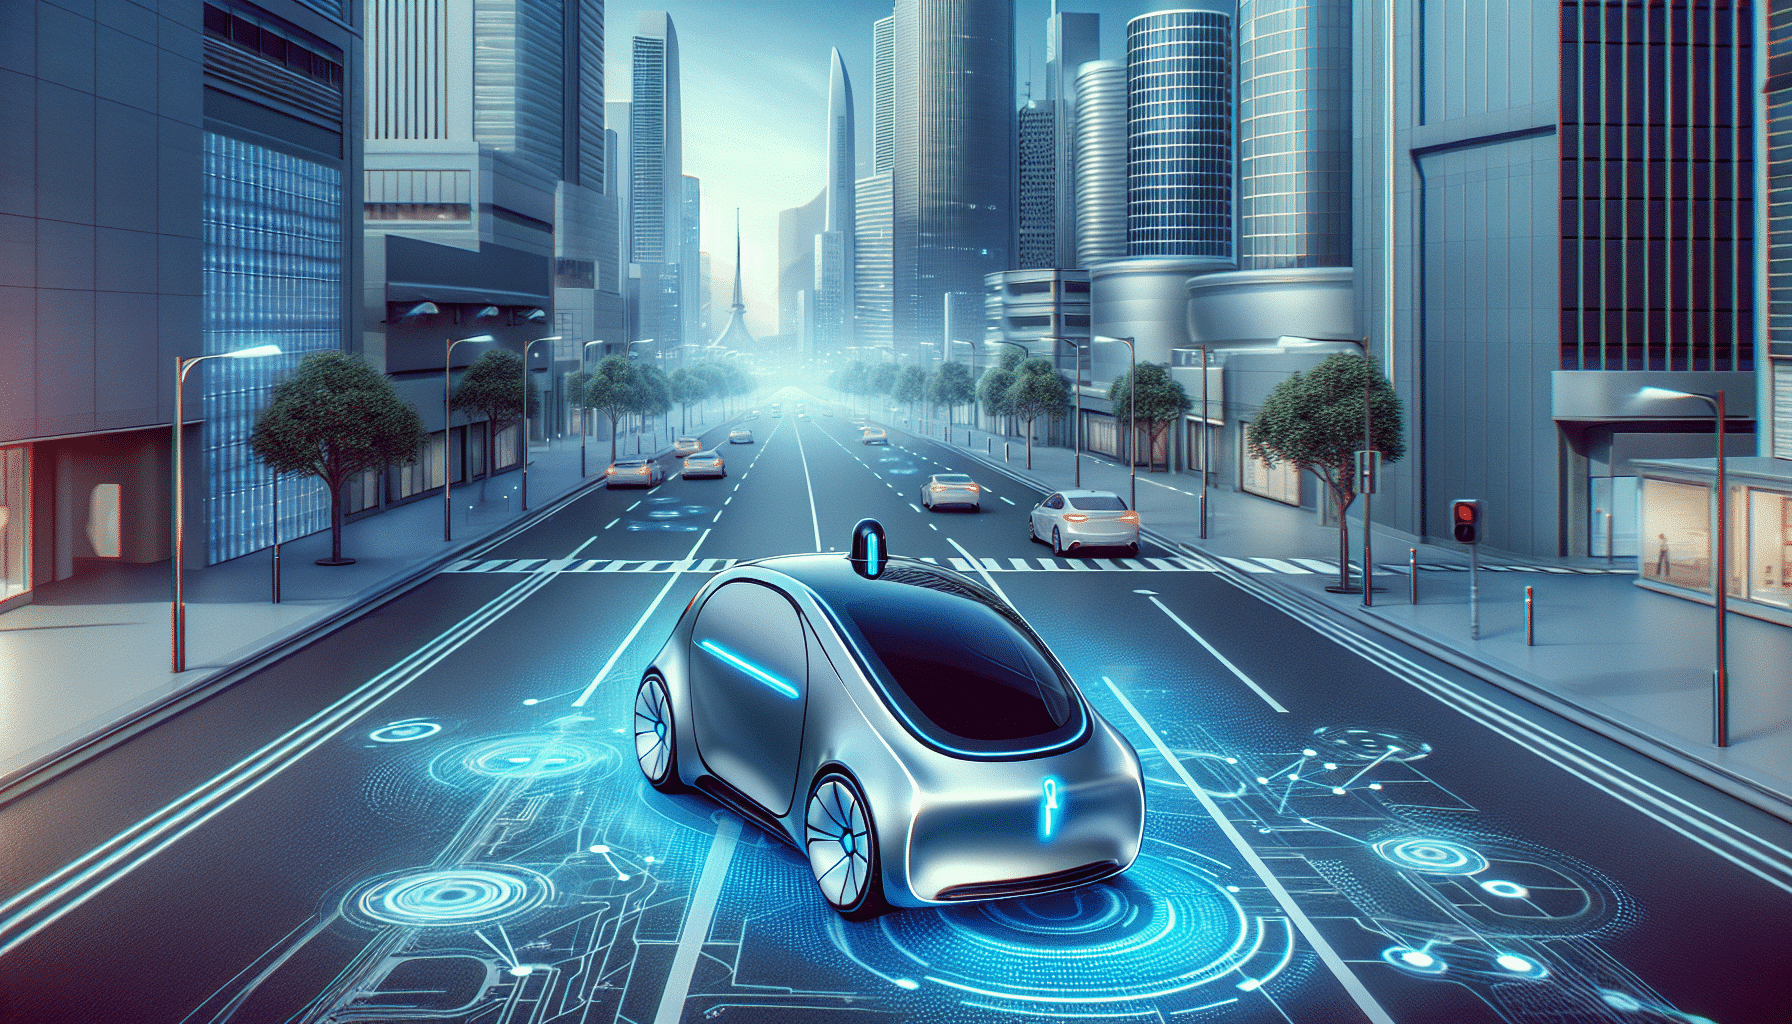 tesla revoluciona la conducción autónoma con innovadoras mejoras tecnológicas destacadas. descubre las últimas innovaciones en tecnología de conducción autónoma de tesla.